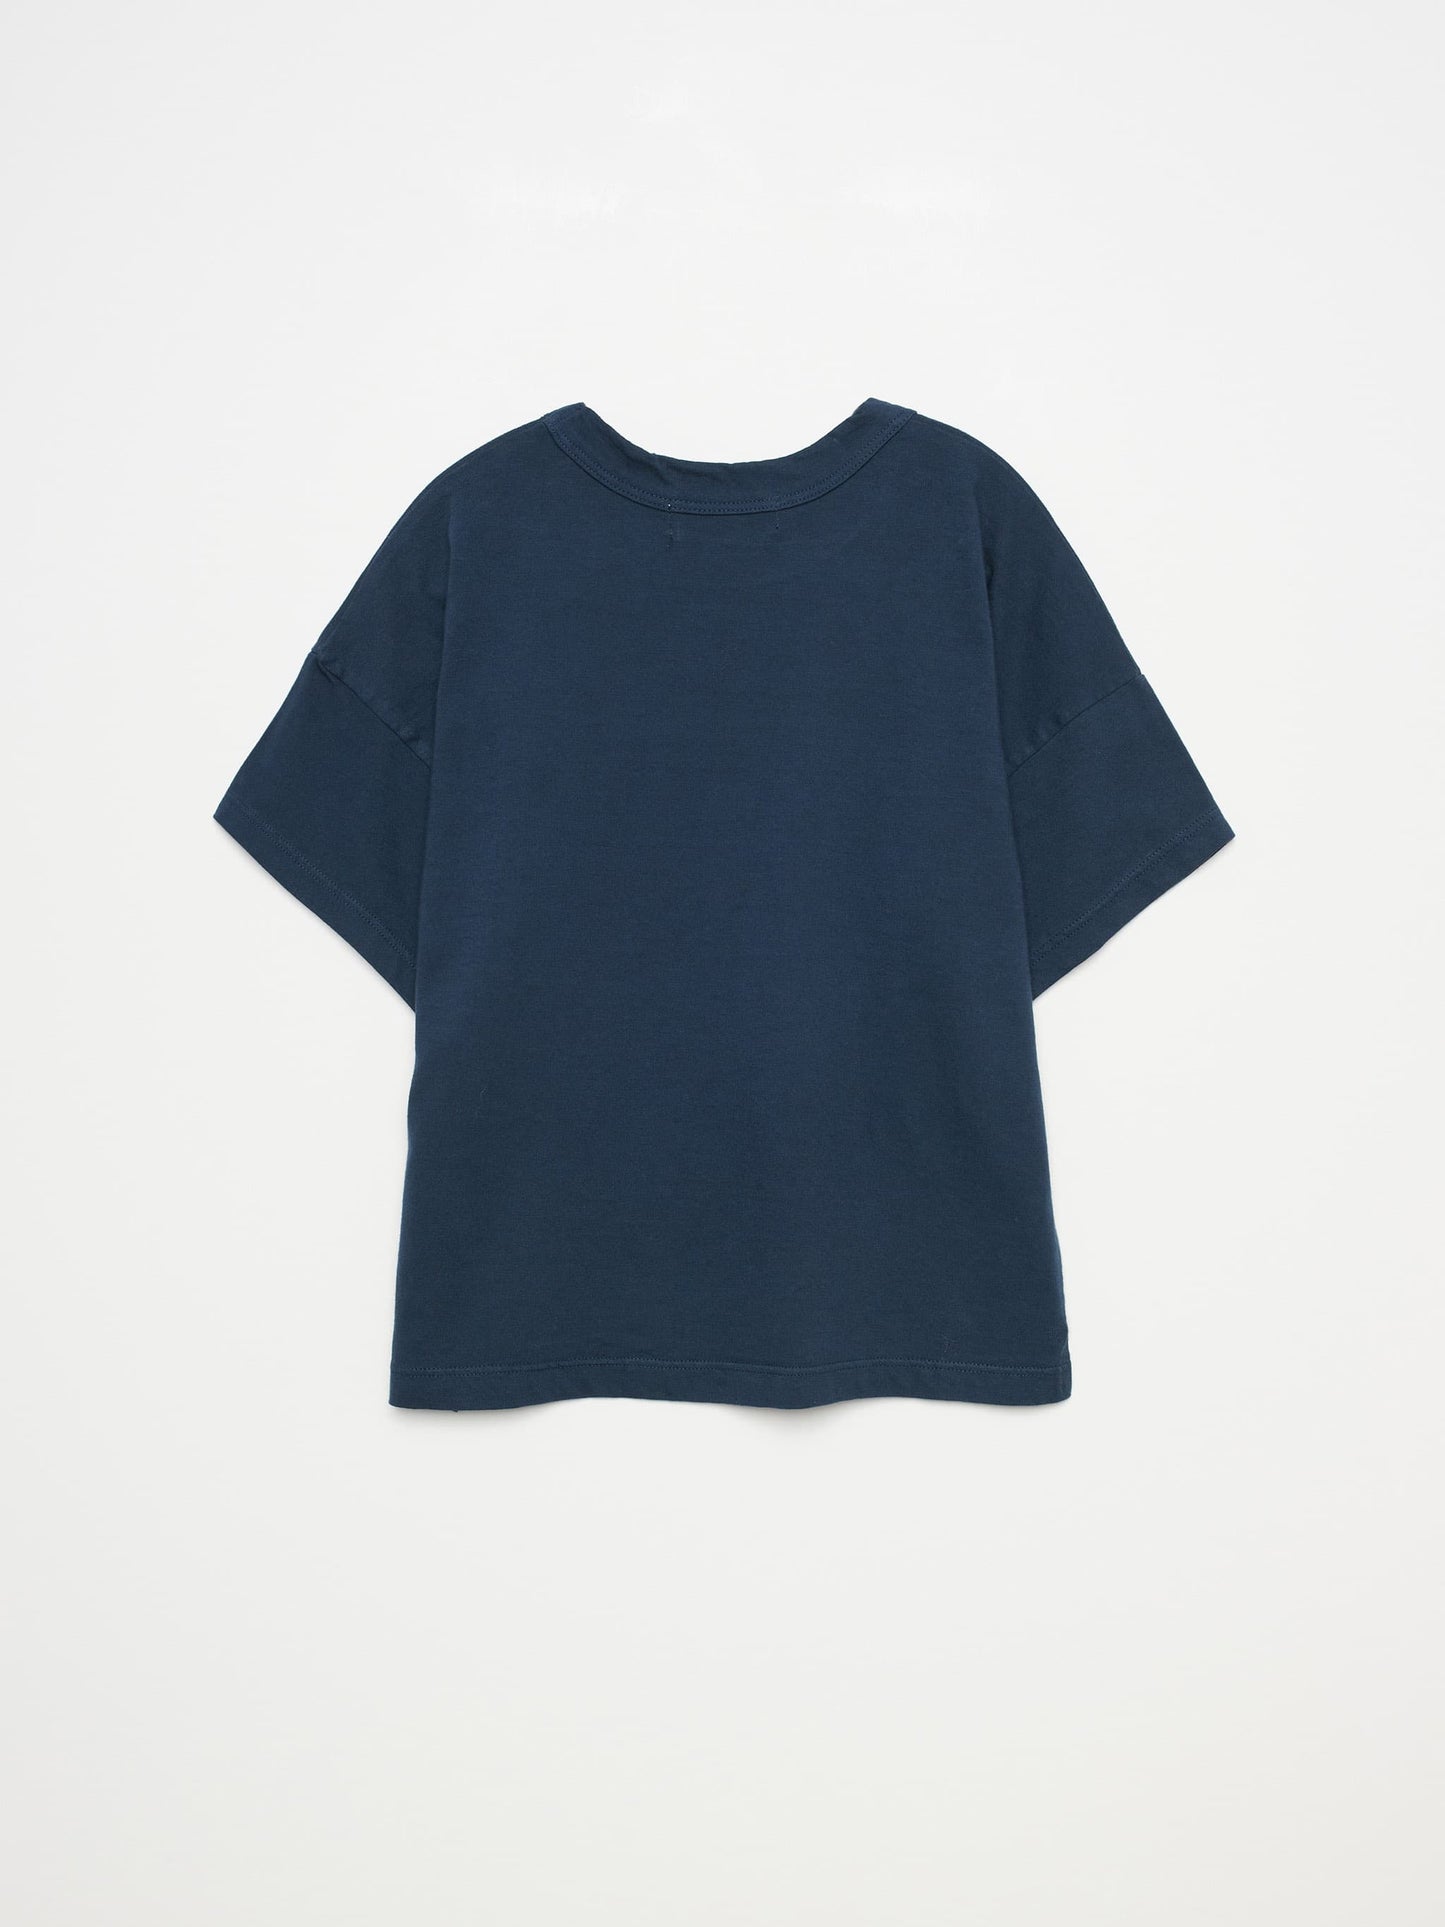 T-shirt nº01 Navy Blue